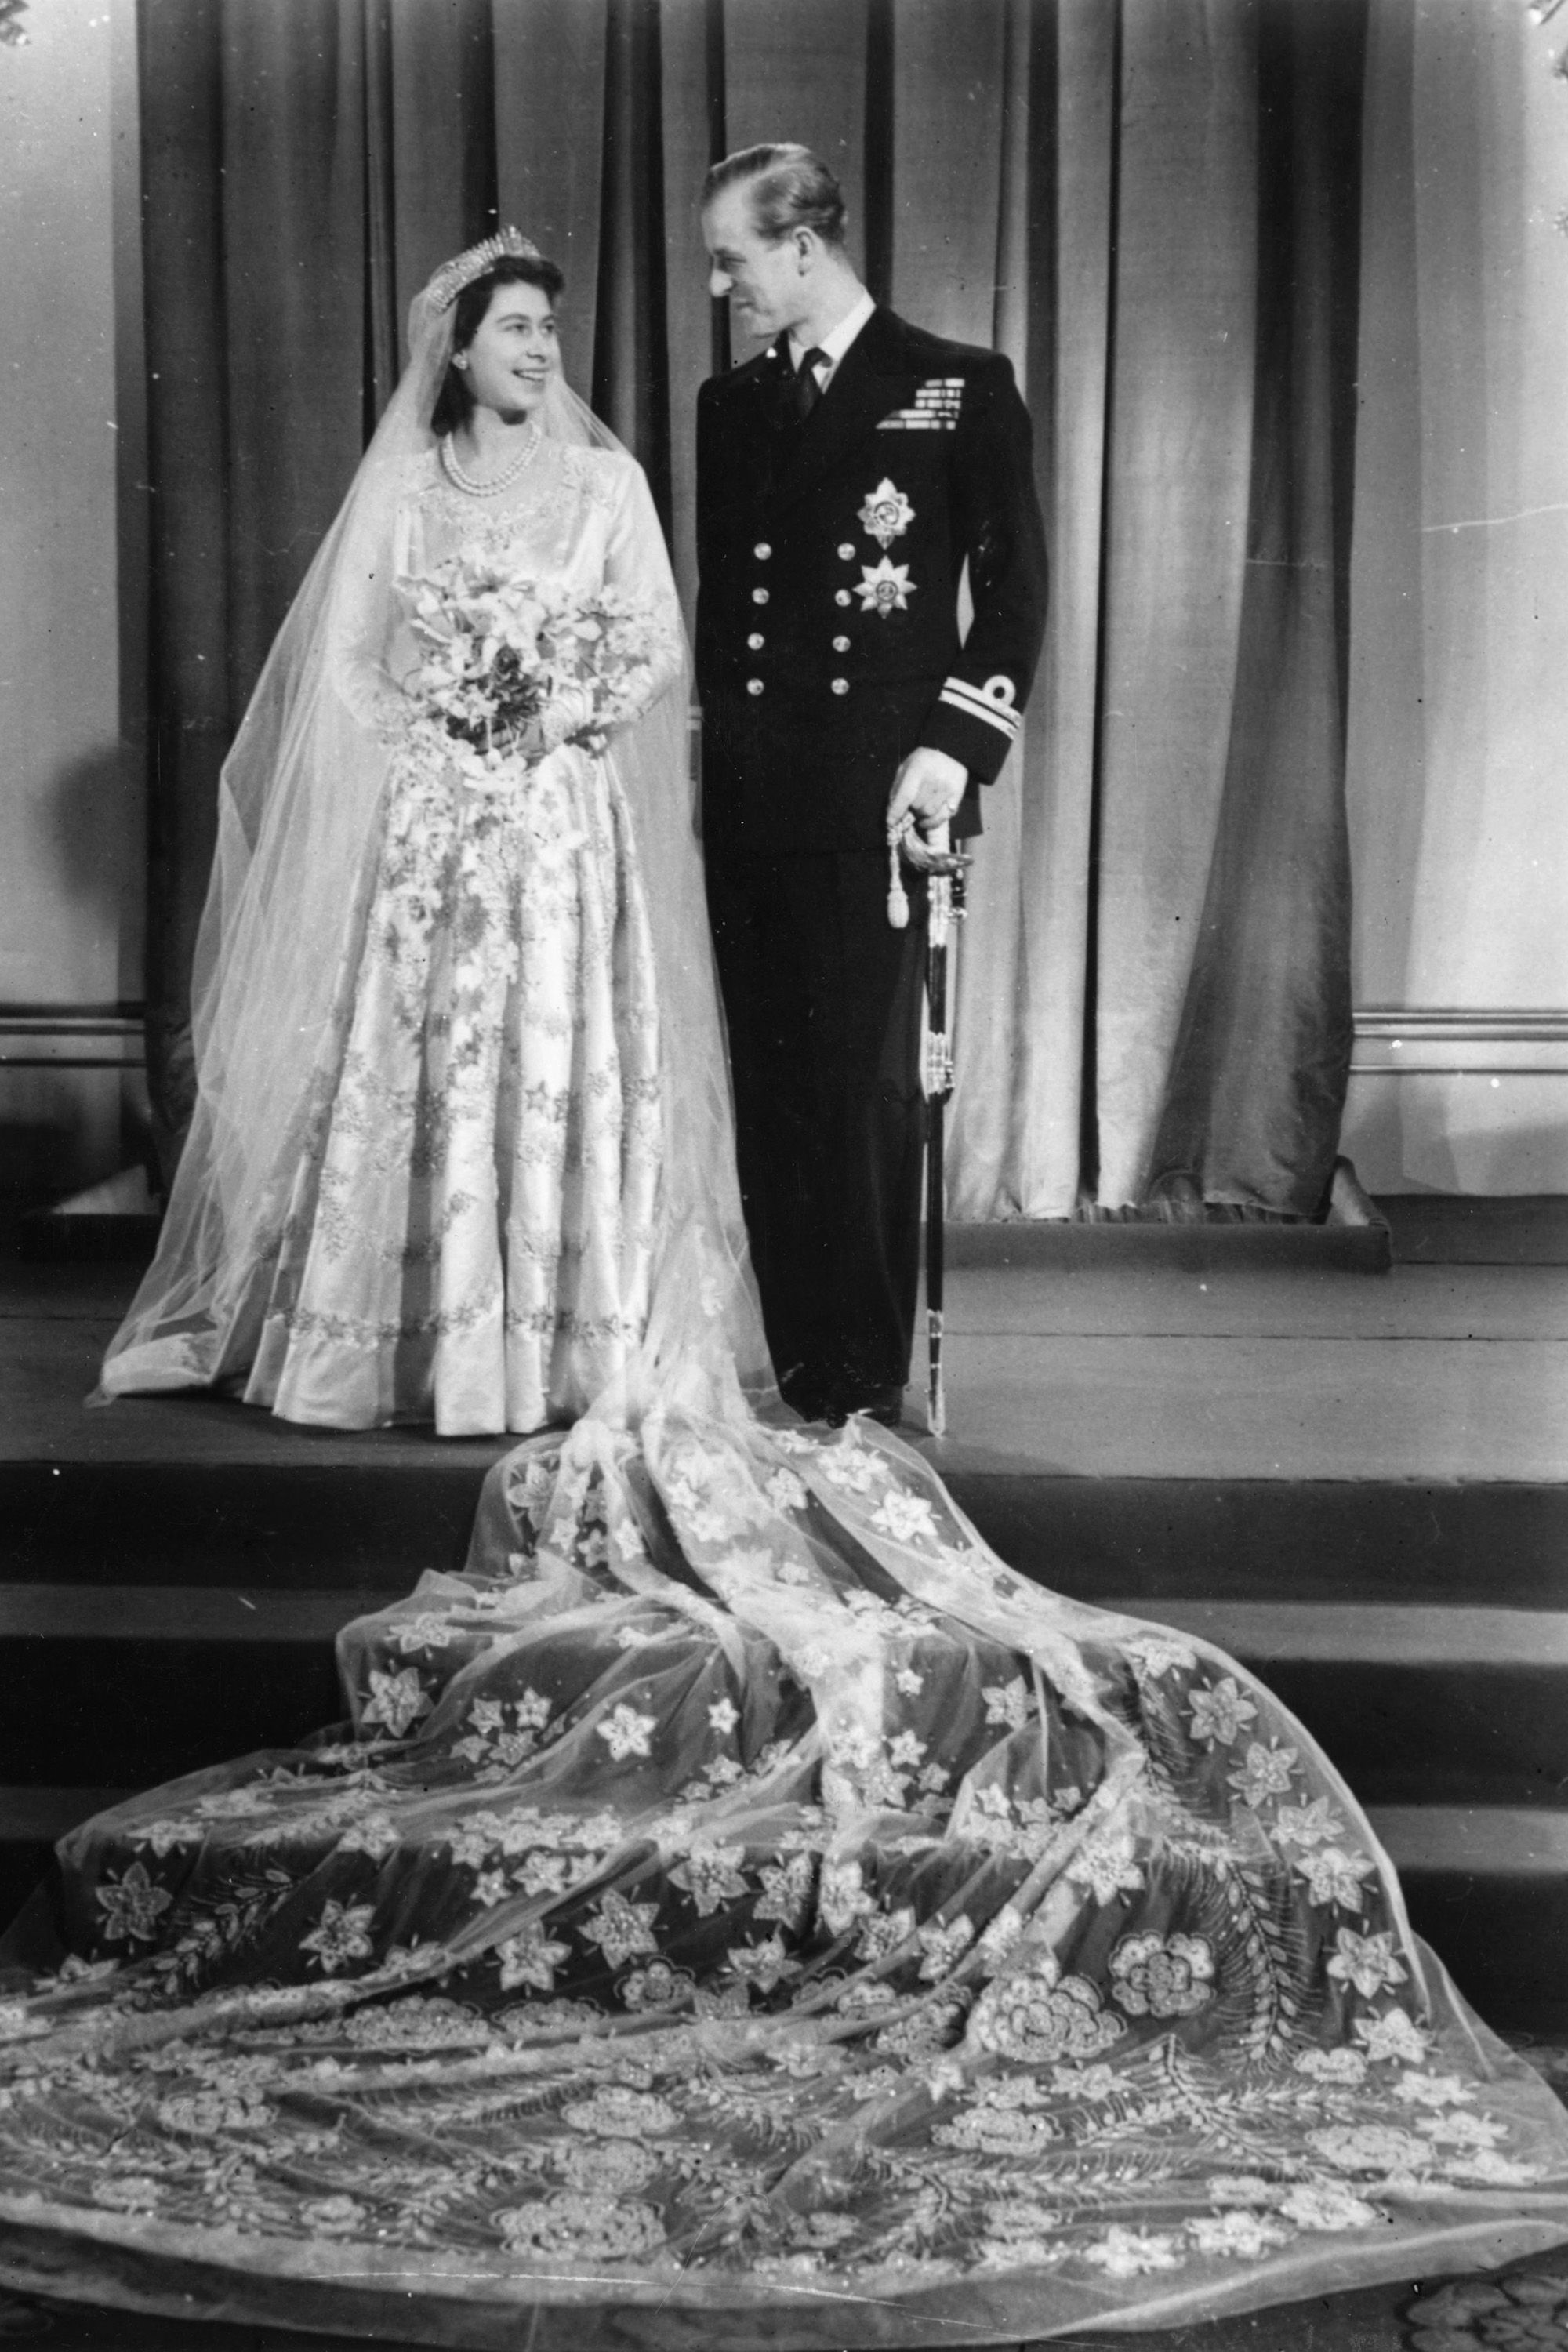 https://hips.hearstapps.com/harpersbazaar/assets/15/23/hbz-vintage-wedding-1947-princess-elizabeth-philip-mountbatten.jpg